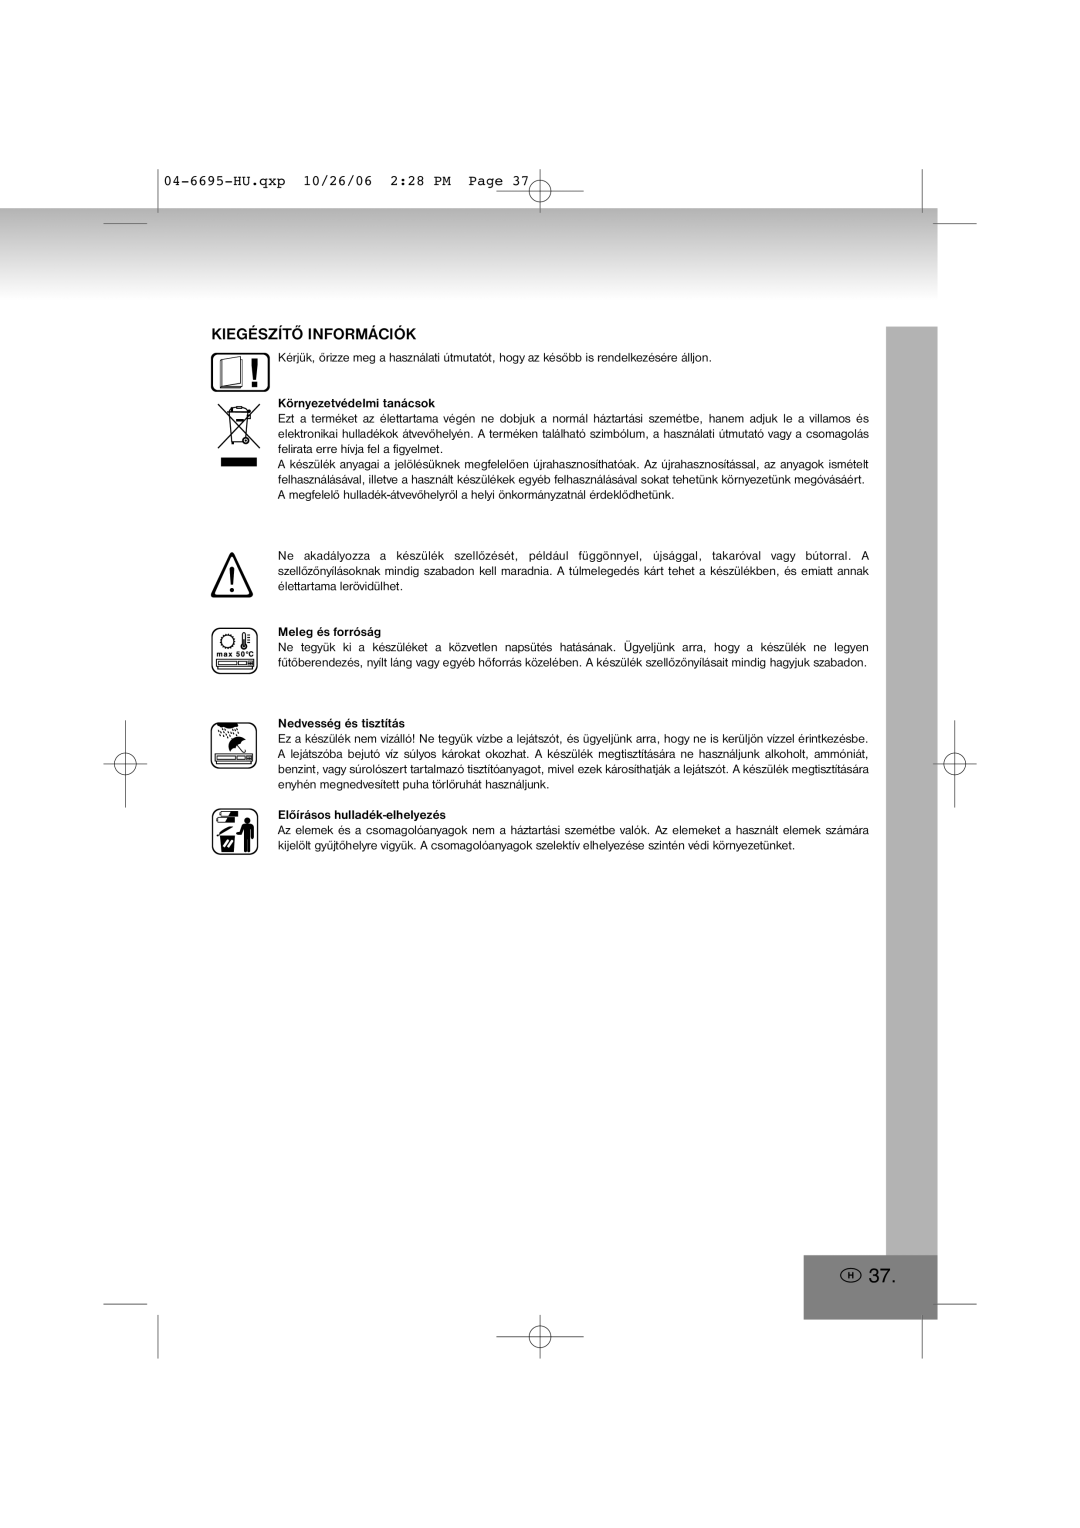 Elta manual Kiegészítő Információk, 04-6695-HU.qxp10/26/06 2 28 PM Page 